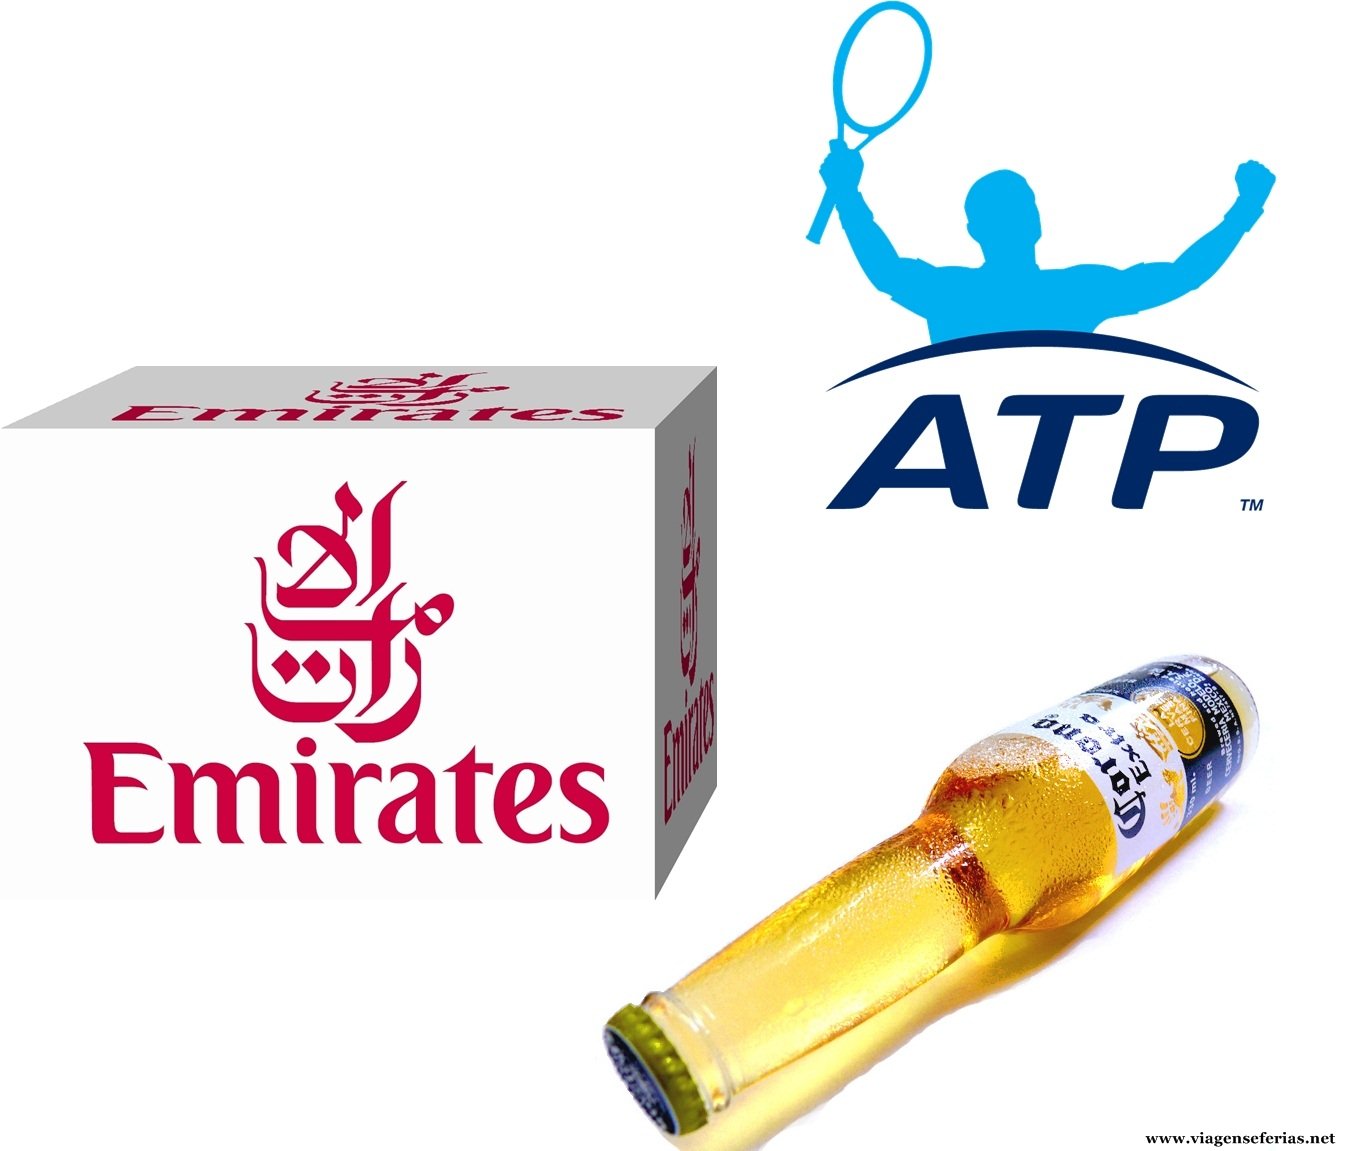 Companhia Emirates sucede à Corona como Premier Partner do ATP World Tour